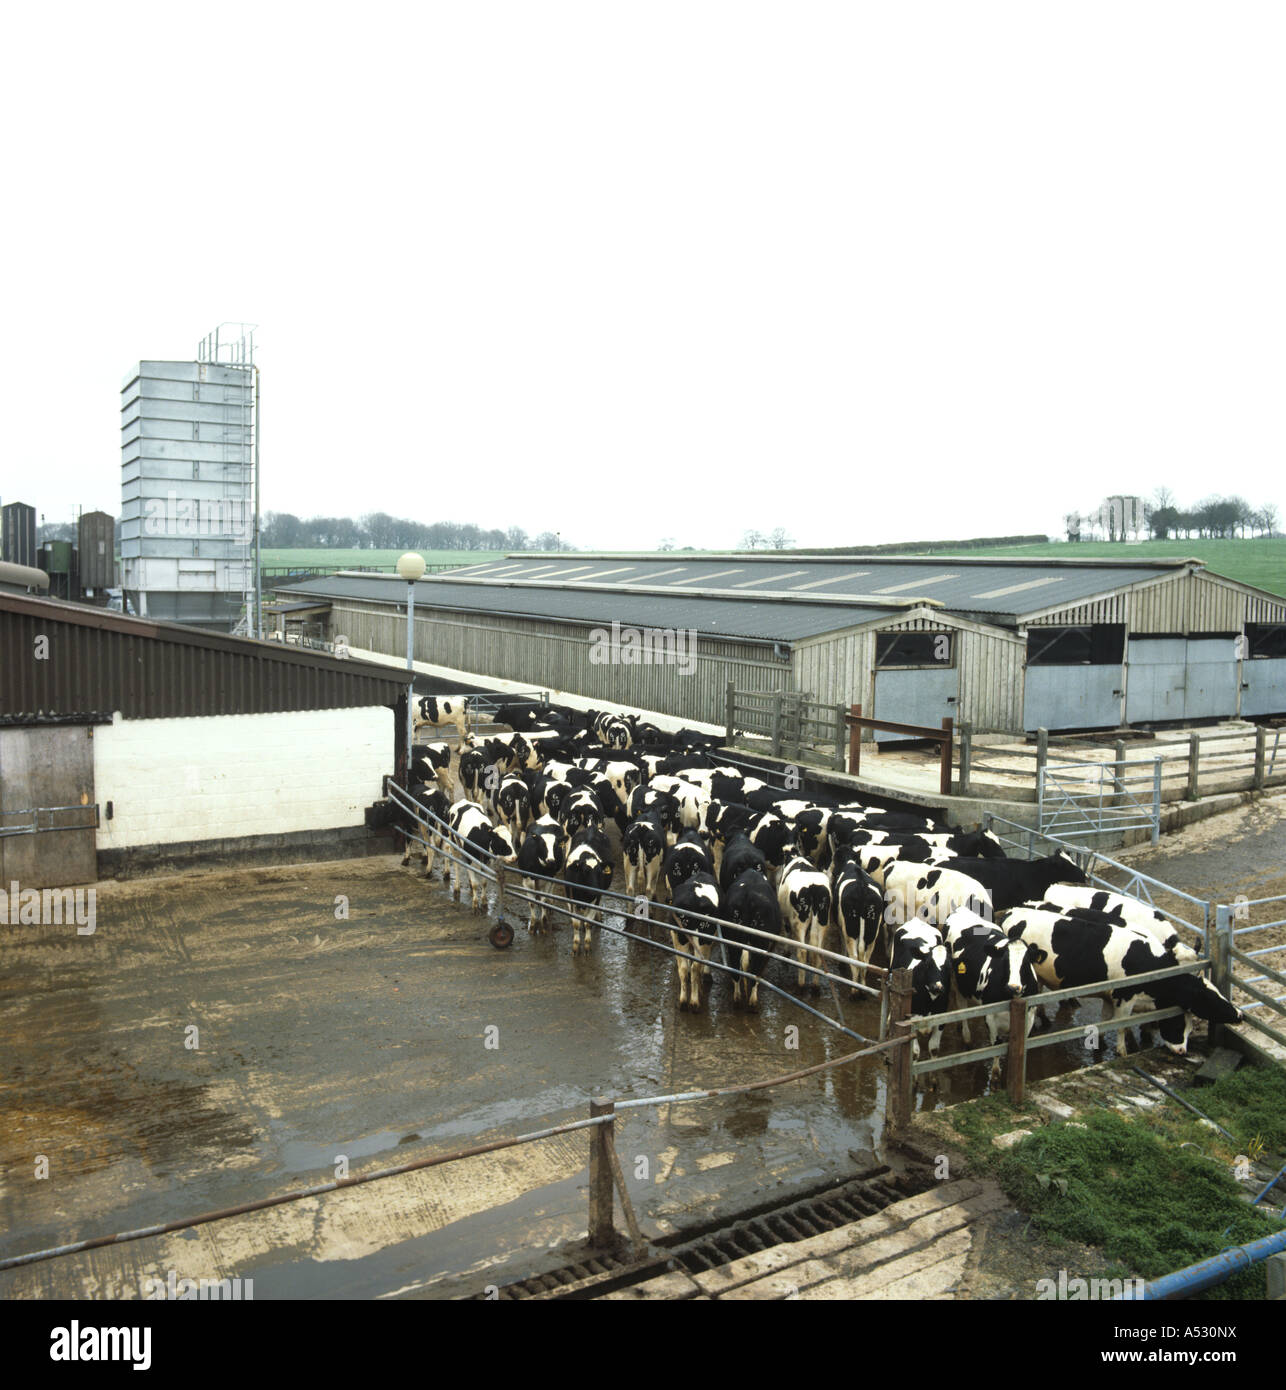 Mirando hacia abajo en una granja de ganado patio de recolección con novillas Holstein Friesian Foto de stock